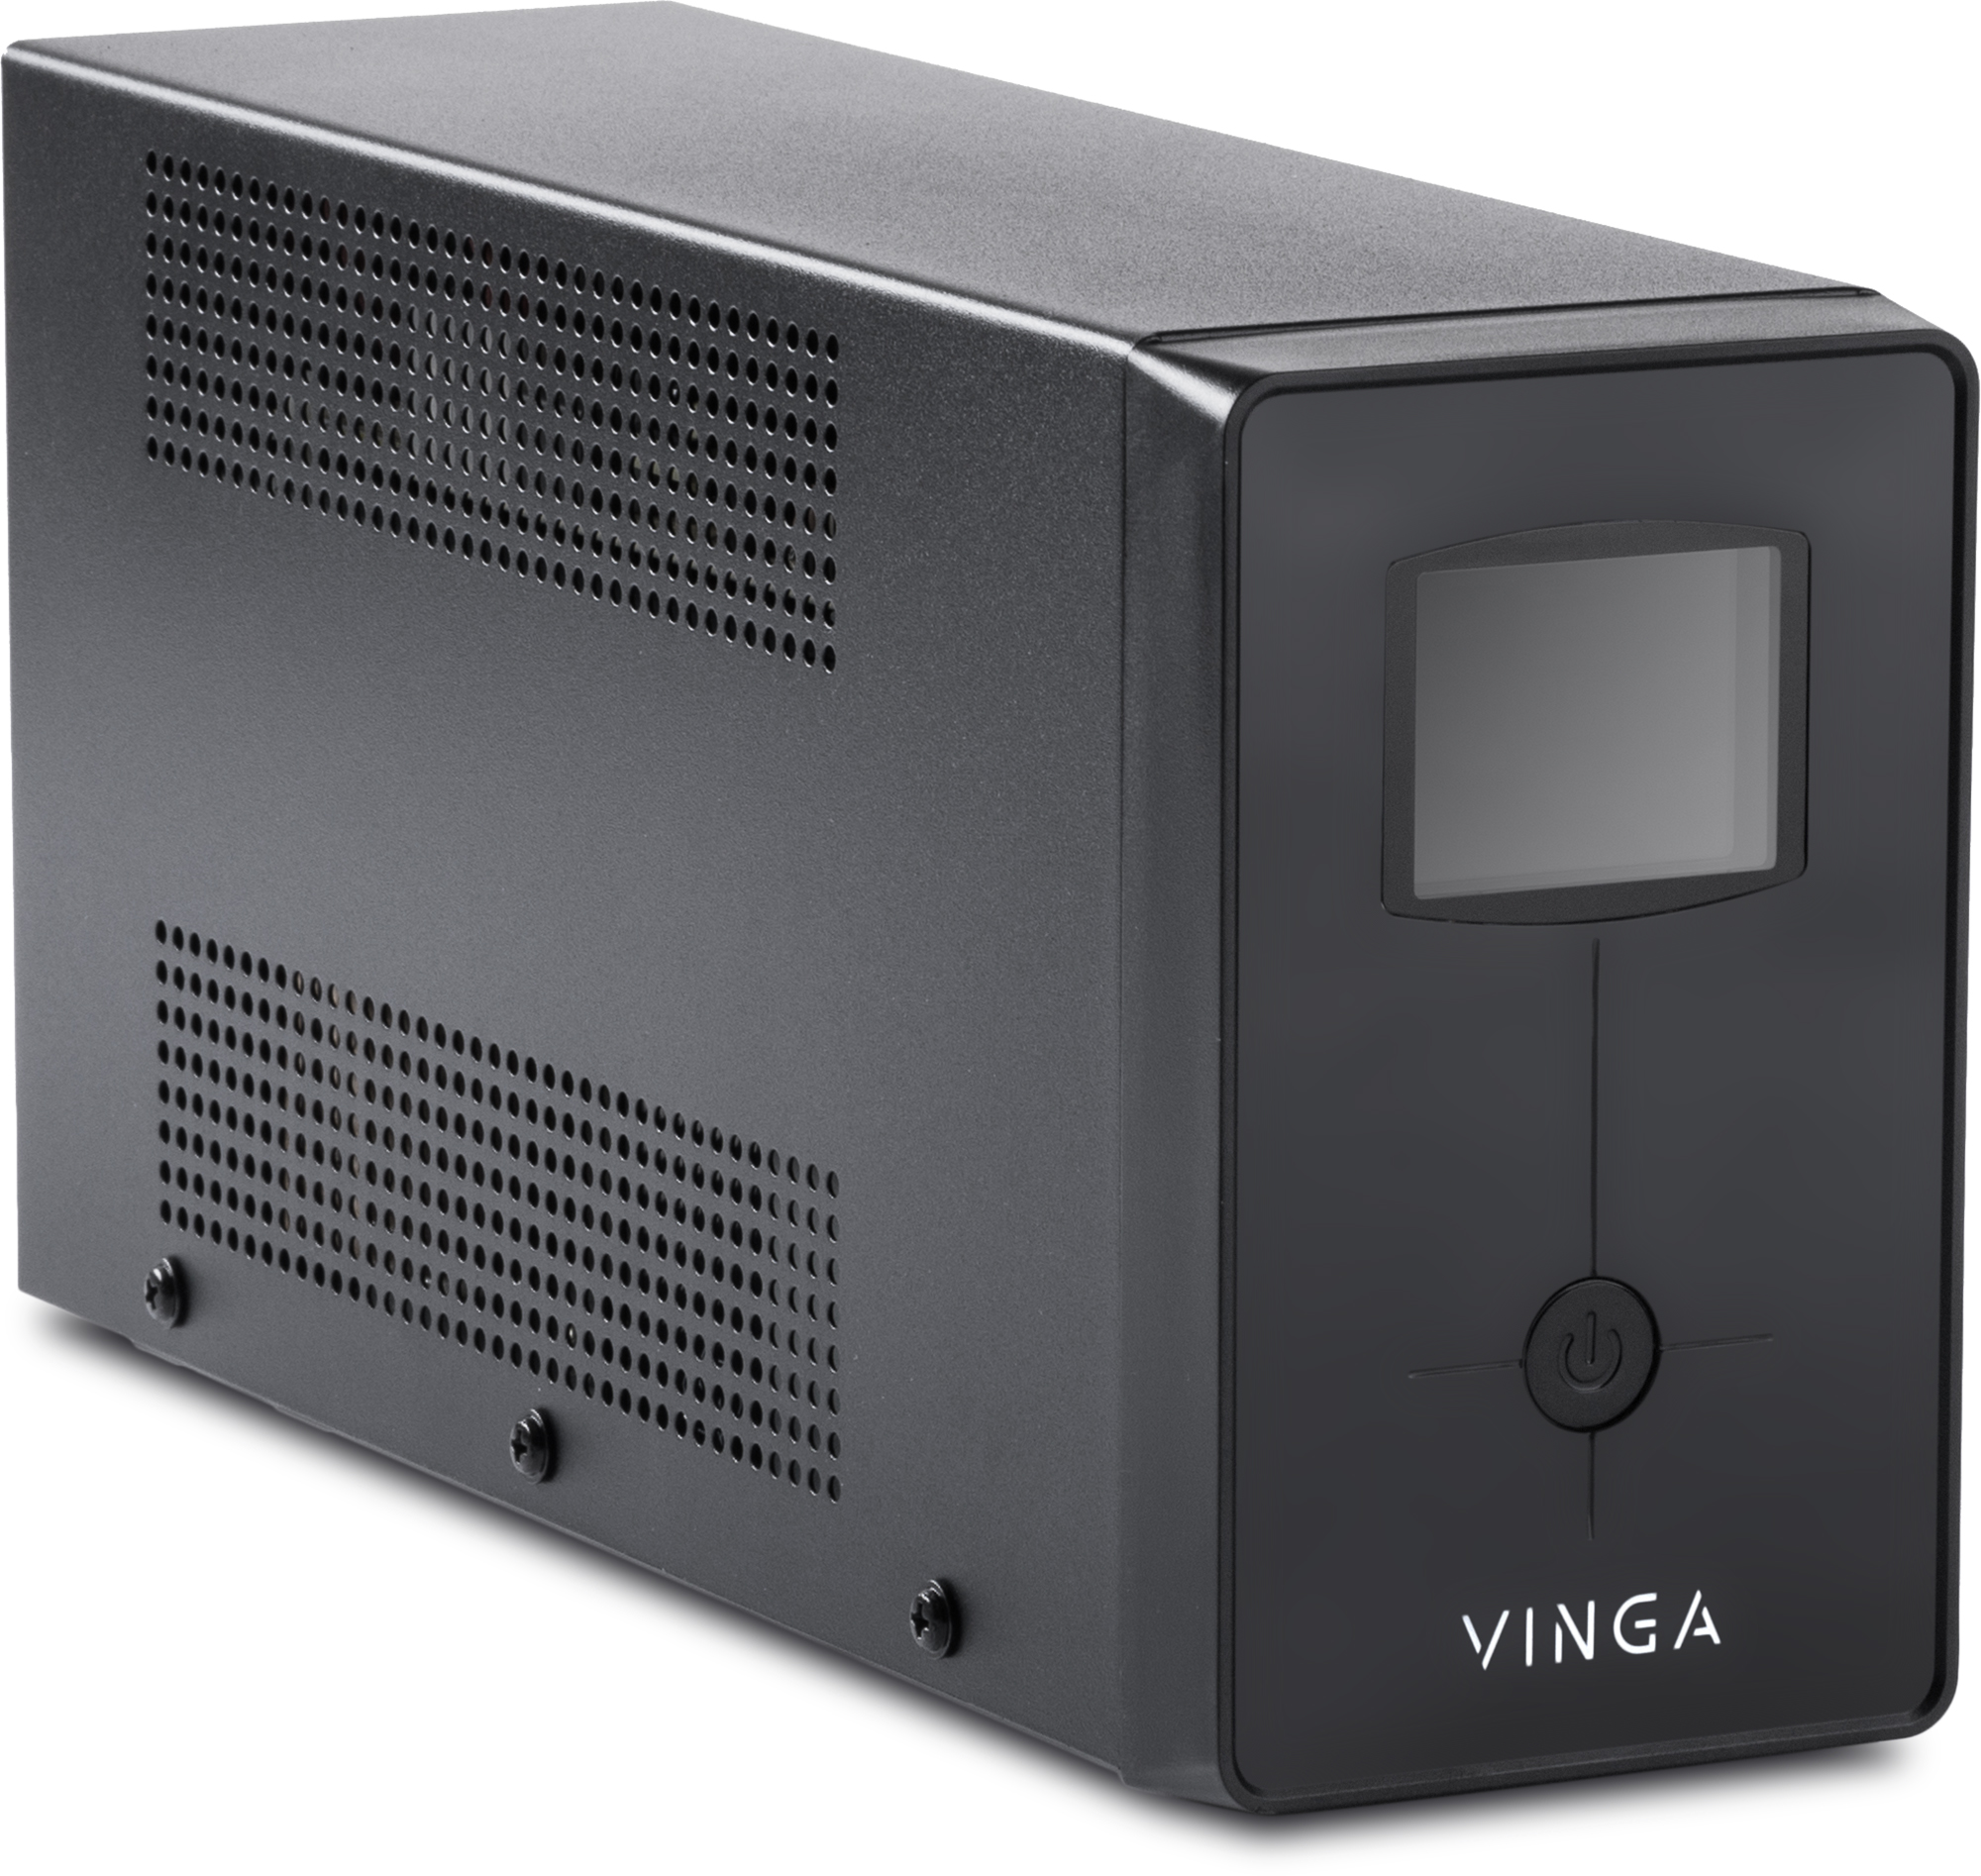 Источник бесперебойного питания Vinga LCD 800VA (VPC-800M) характеристики - фотография 7